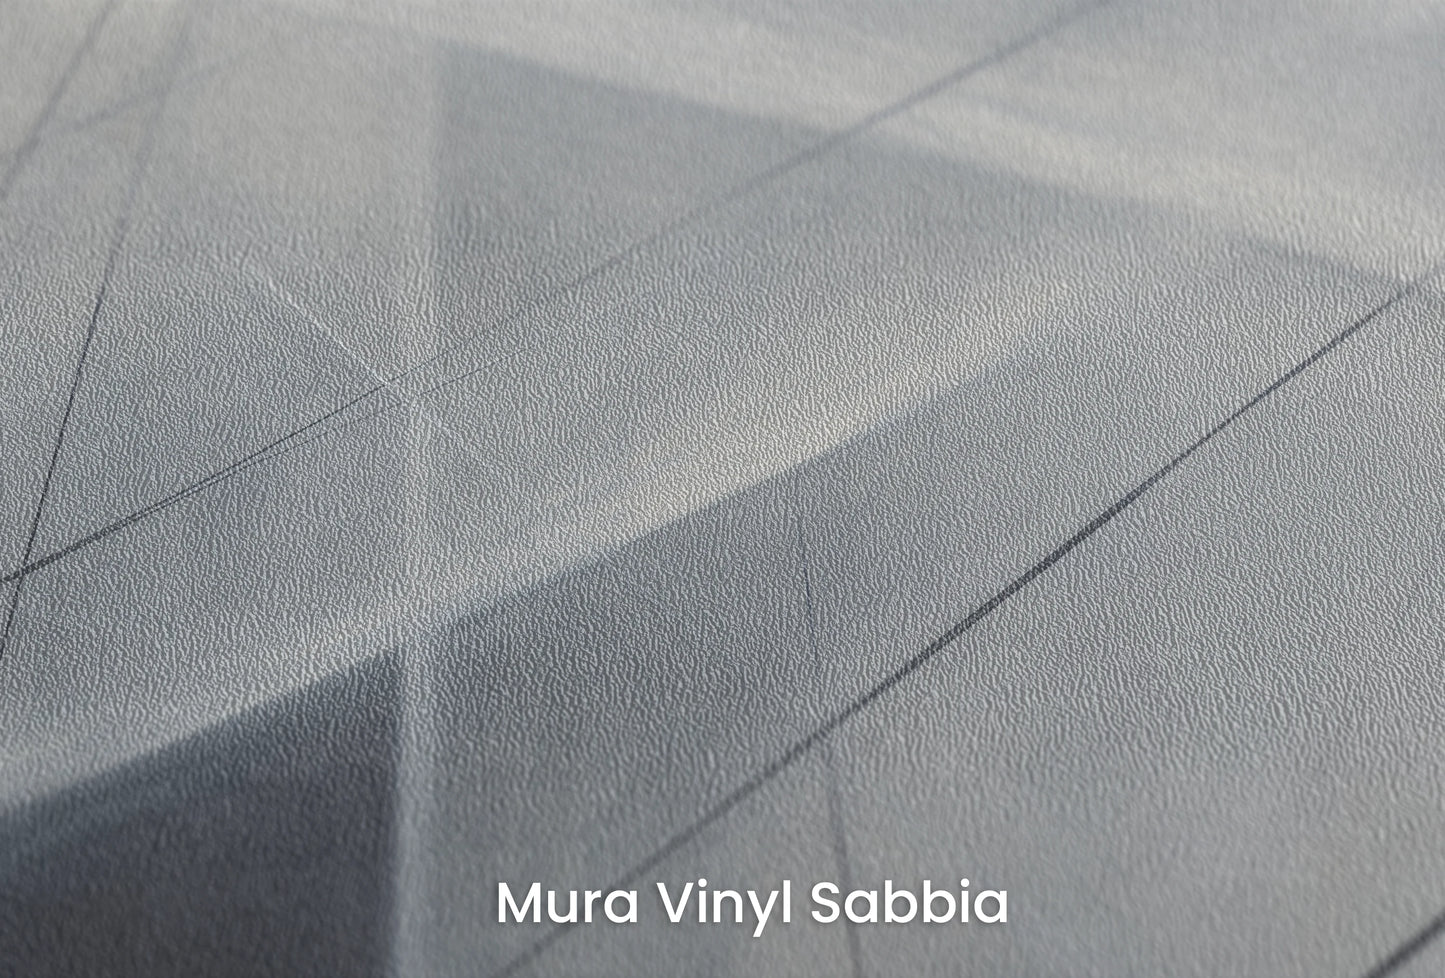 Zbliżenie na artystyczną fototapetę o nazwie Monochrome Network na podłożu Mura Vinyl Sabbia struktura grubego ziarna piasku.